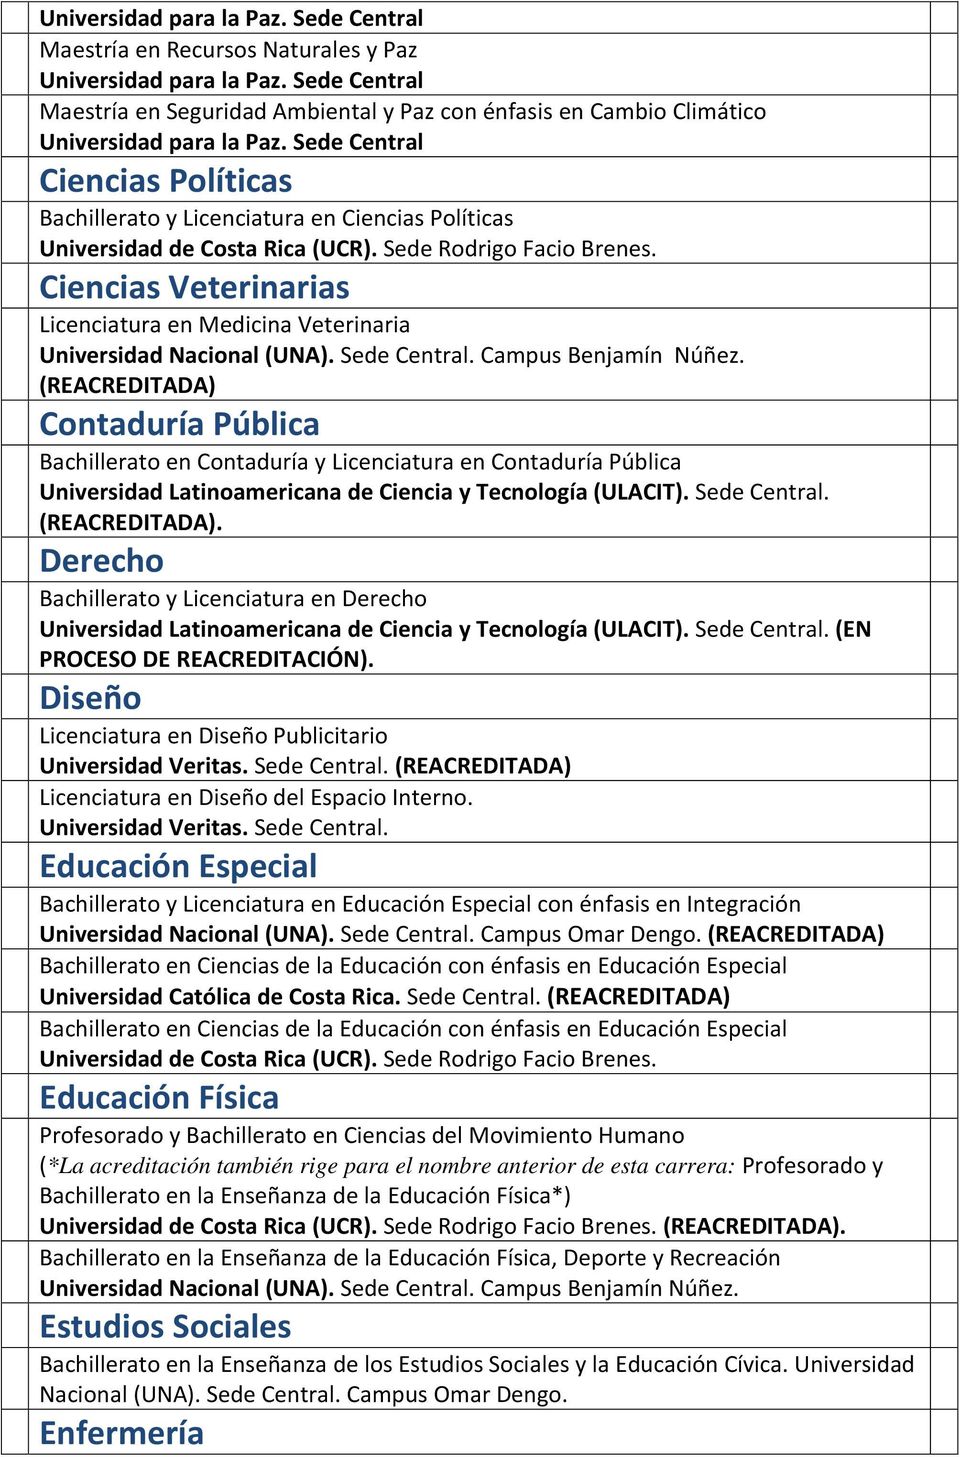 Sede Central Ciencias Políticas Bachillerato y Licenciatura en Ciencias Políticas Ciencias Veterinarias Licenciatura en Medicina Veterinaria Universidad Nacional (UNA). Sede Central.